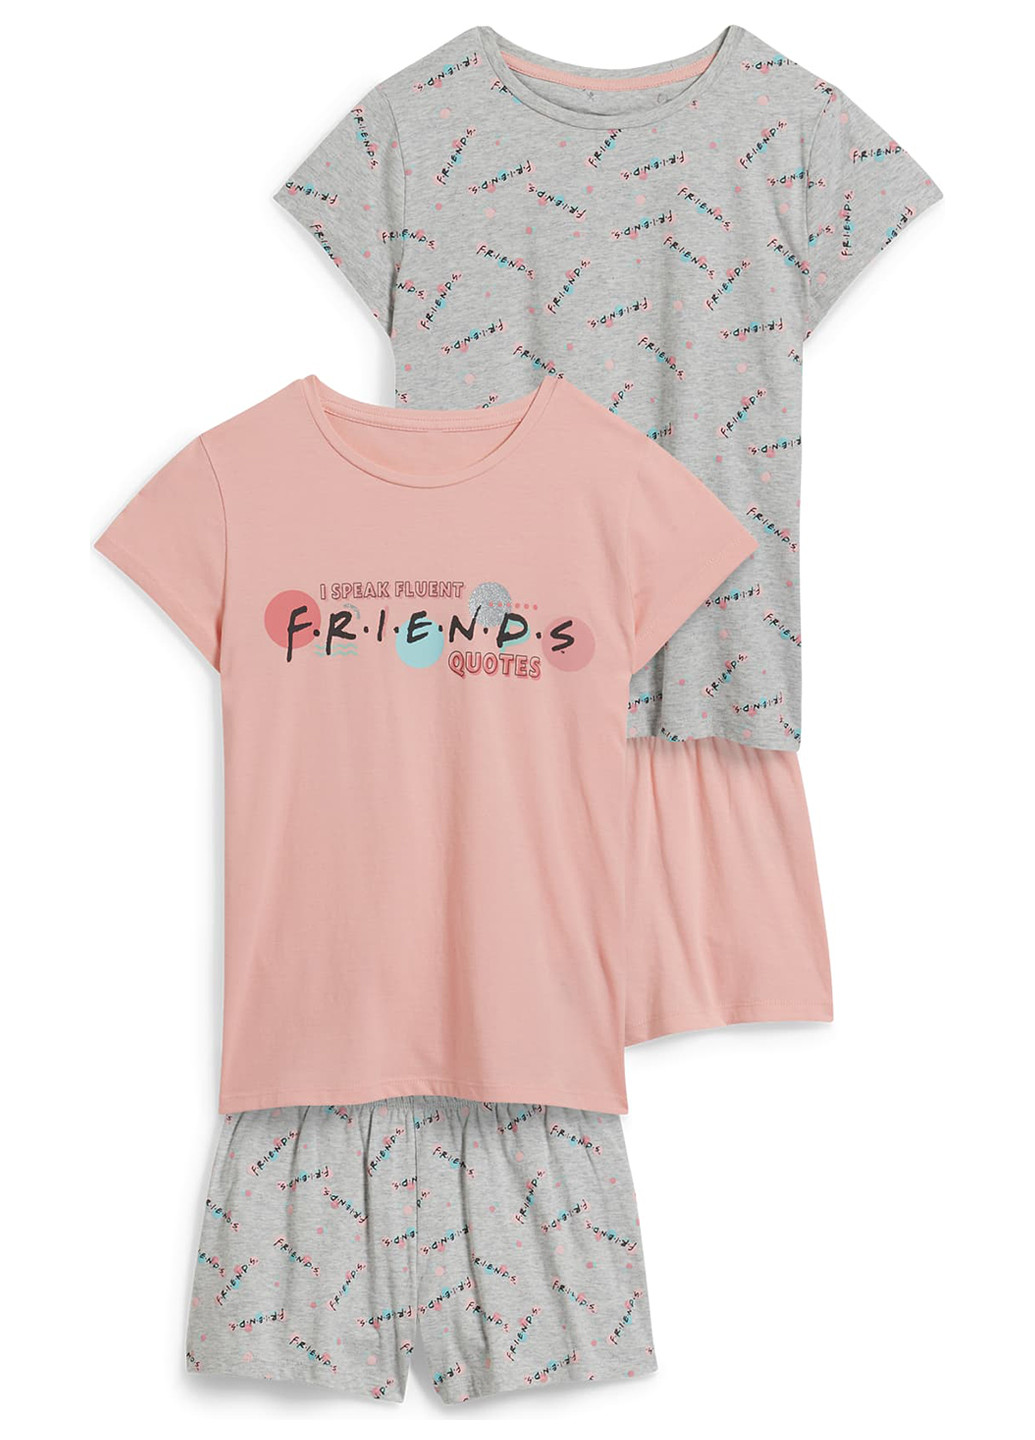 Комбинированная всесезон пижама (футболка, шорты), (2 шт.) футболка + шорты C&A